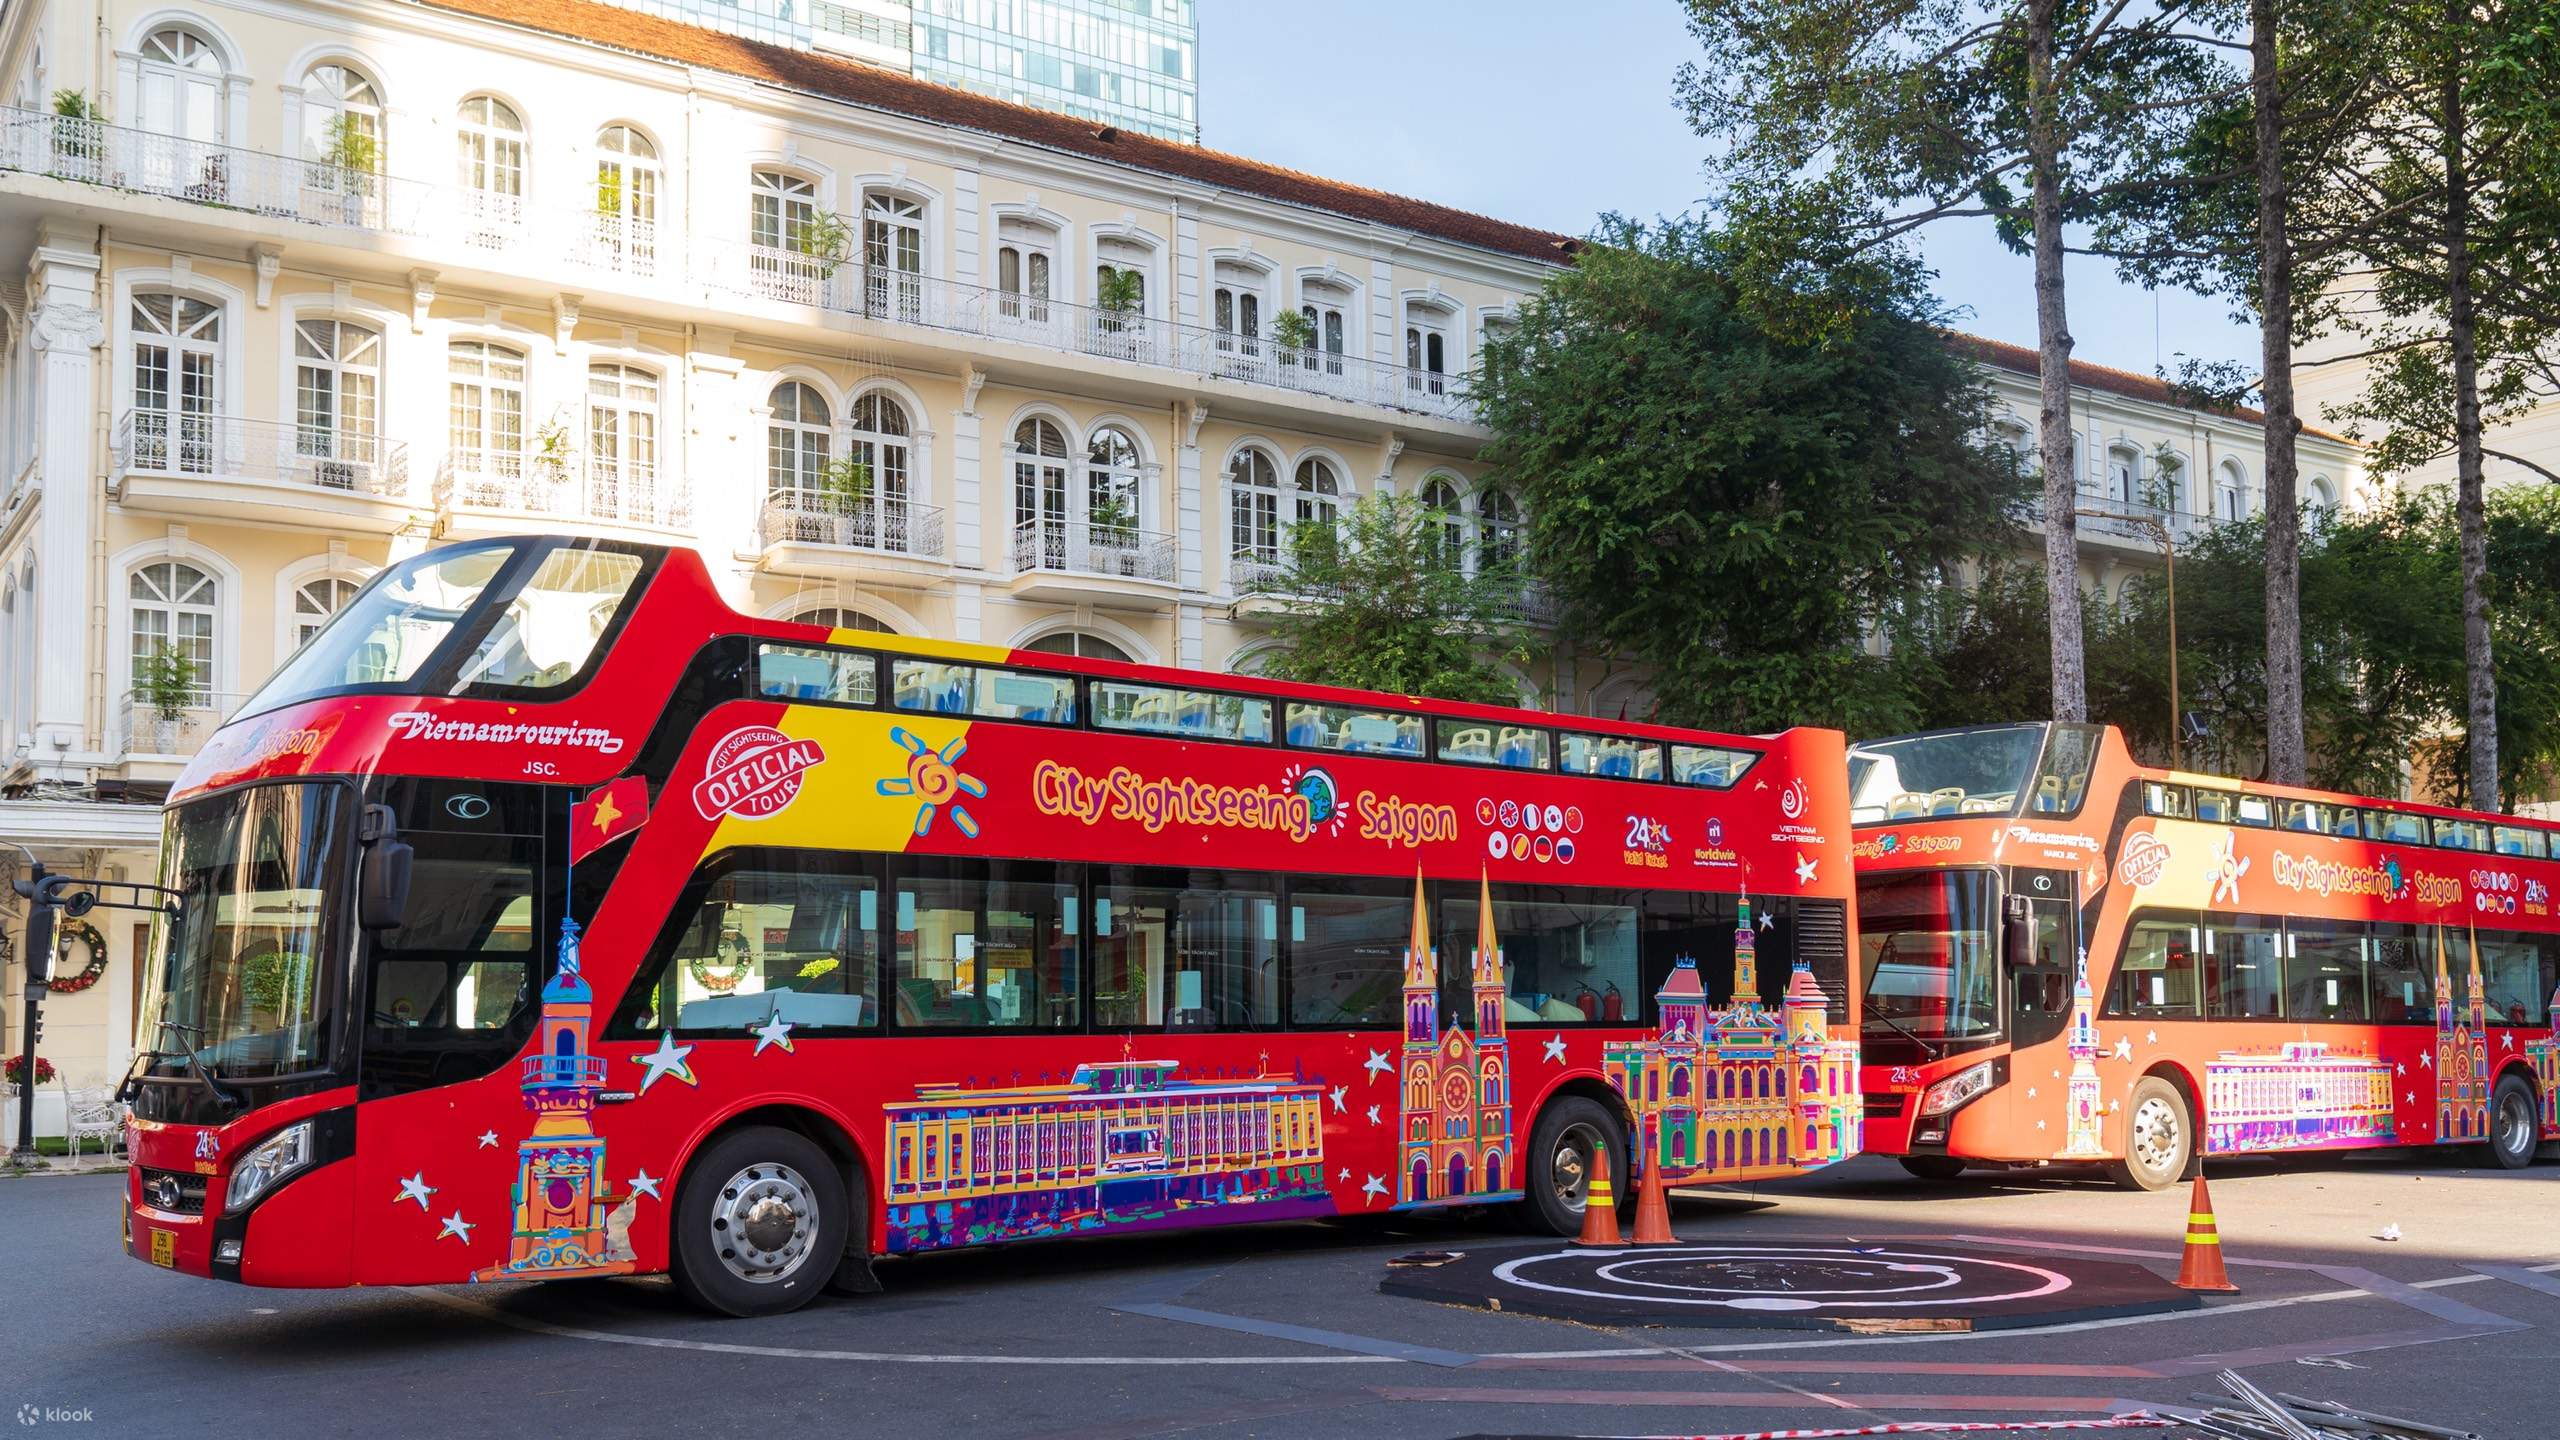 Vé xe buýt: Hãy xem hình ảnh chiếc vé xe buýt để có một trải nghiệm đi lại tiện lợi và đầy sự thú vị! Với giá cả phải chăng và dịch vụ chất lượng, chiếc vé này sẽ giúp bạn khám phá thành phố một cách tuyệt vời.